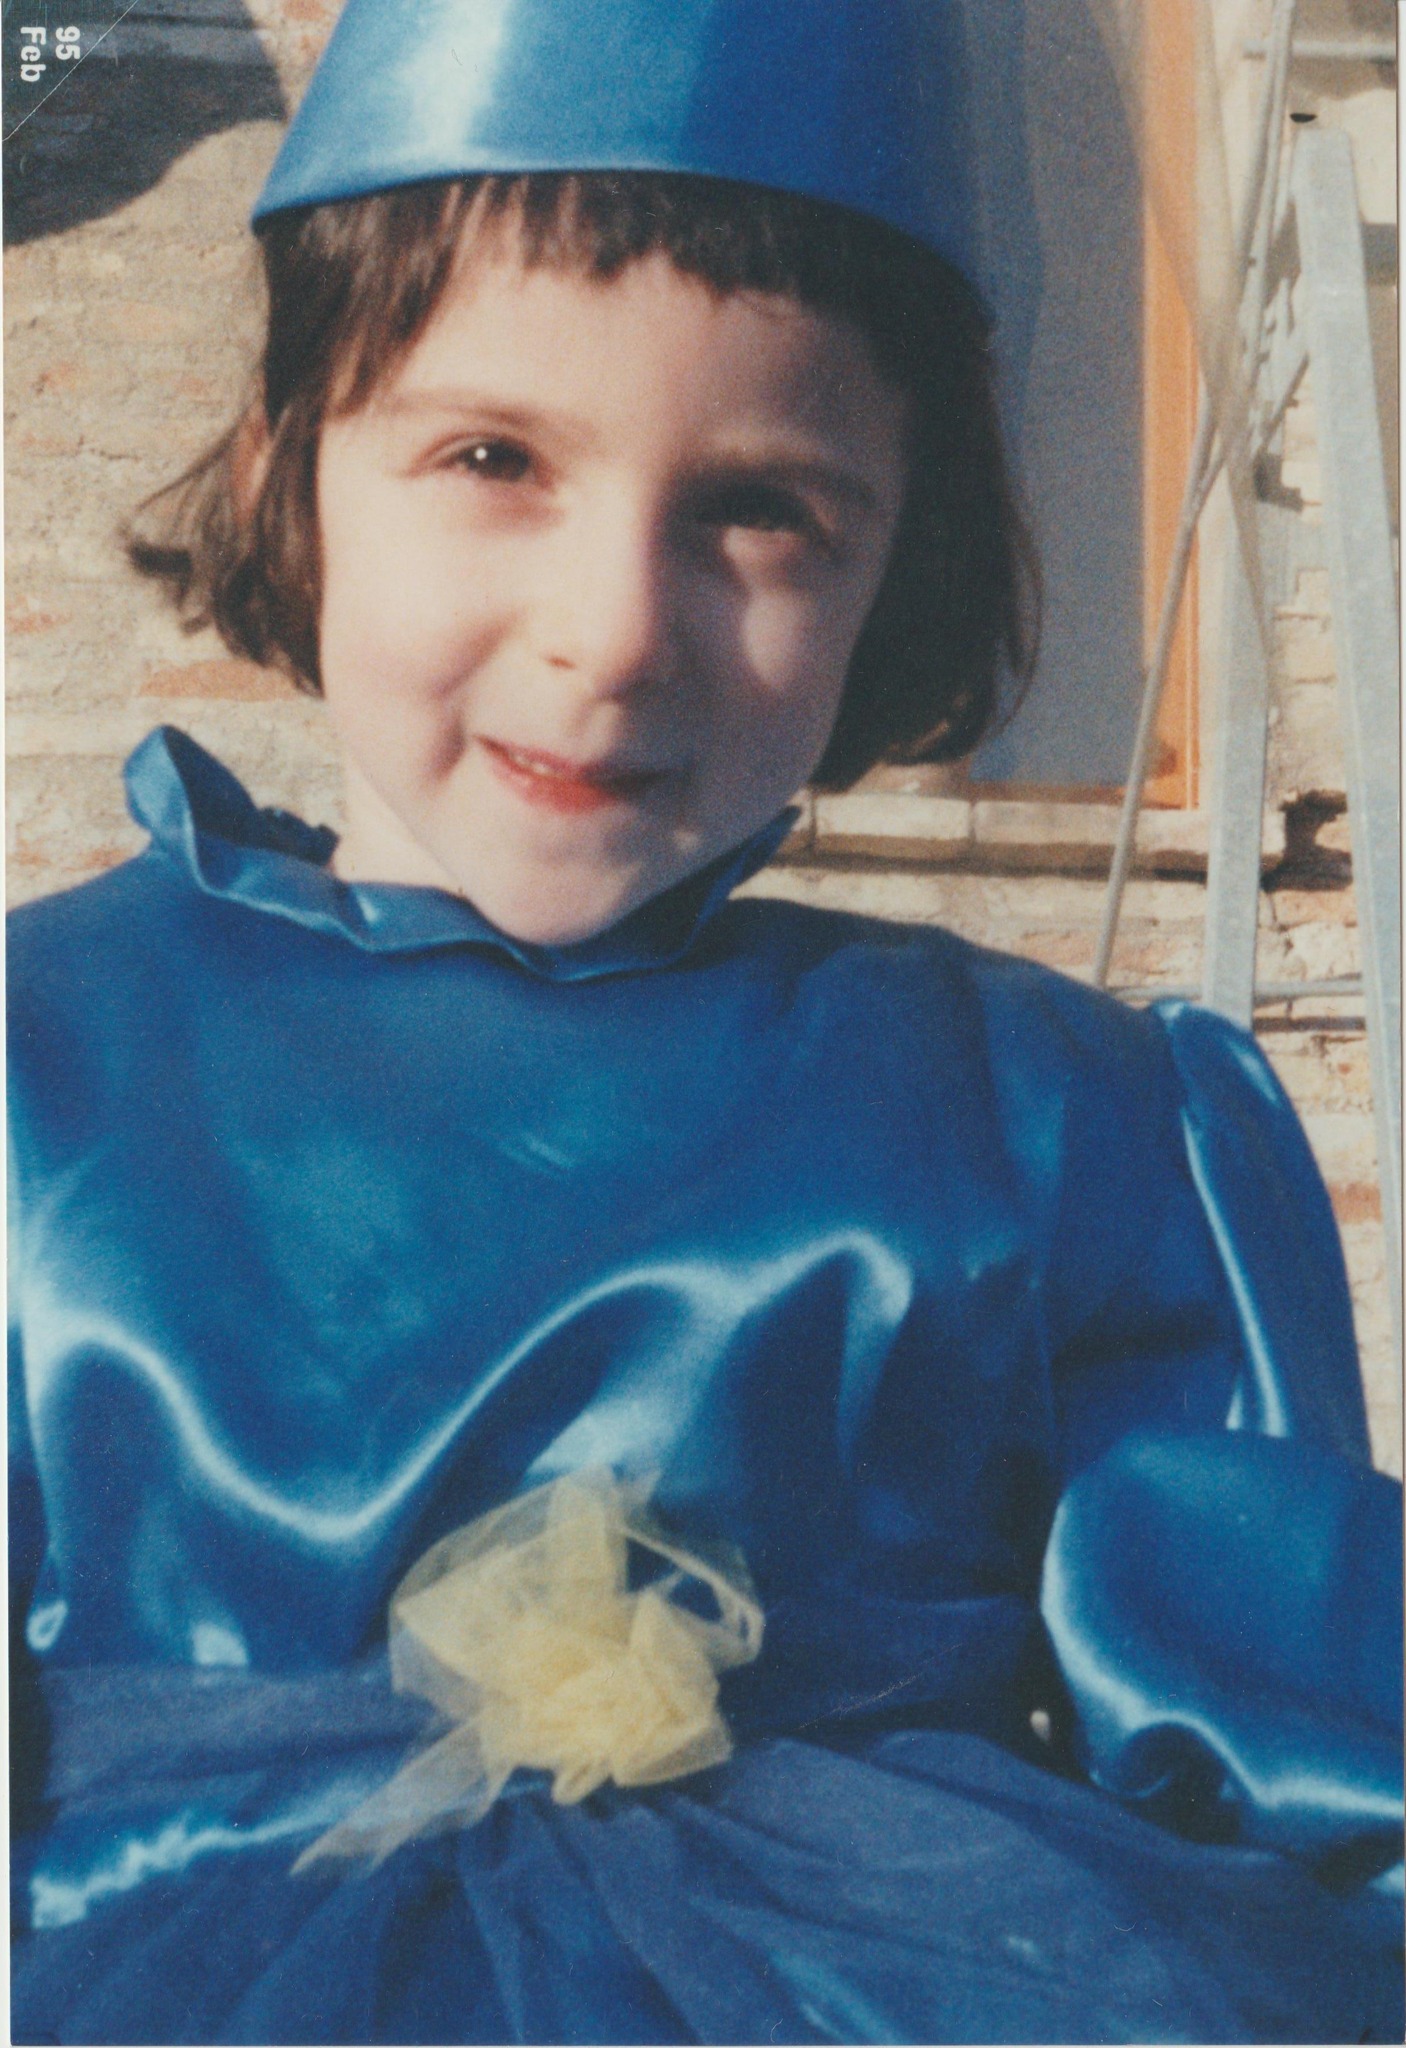 foto di Chiara a quattro anni. Ha i capelli neri corti e lisci, un vestito da fata blu e sorride